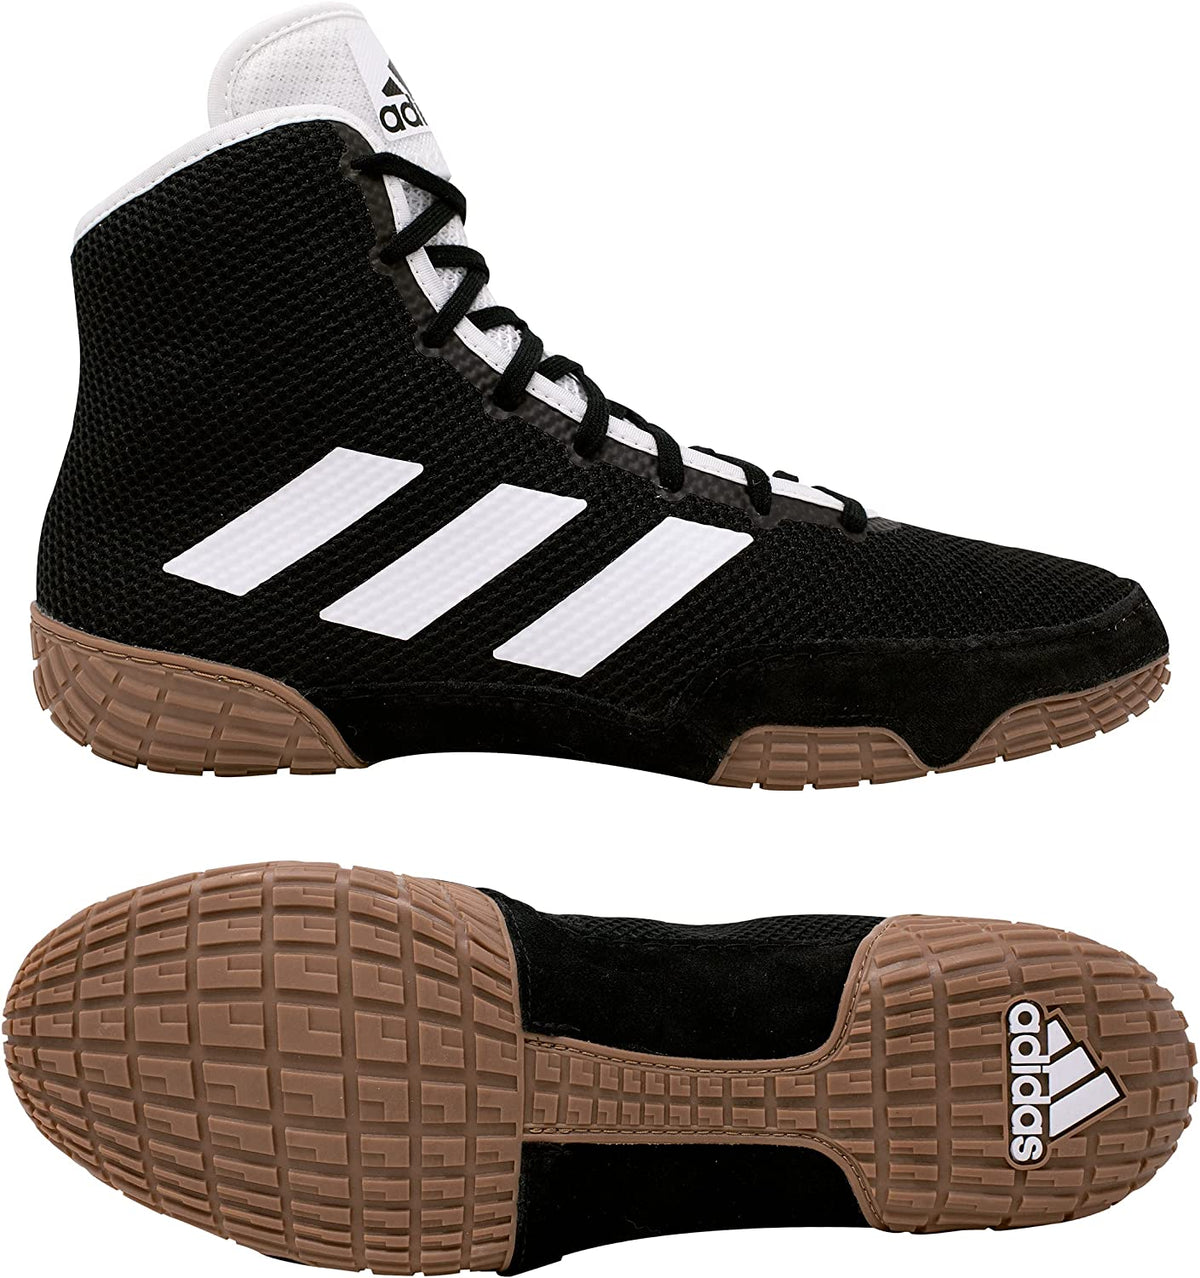 Las zapatillas de lucha Adidas Tech-Fall en color negro. Ahora al mejor precio en Phantom Athletics . Los zapatos de lucha Adidas se encuentran entre los zapatos más buscados entre los luchadores de todo el mundo, ya que ofrecen una calidad superior junto con la máxima comodidad. La suela resistente proporciona tracción sobre la colchoneta de lucha. 